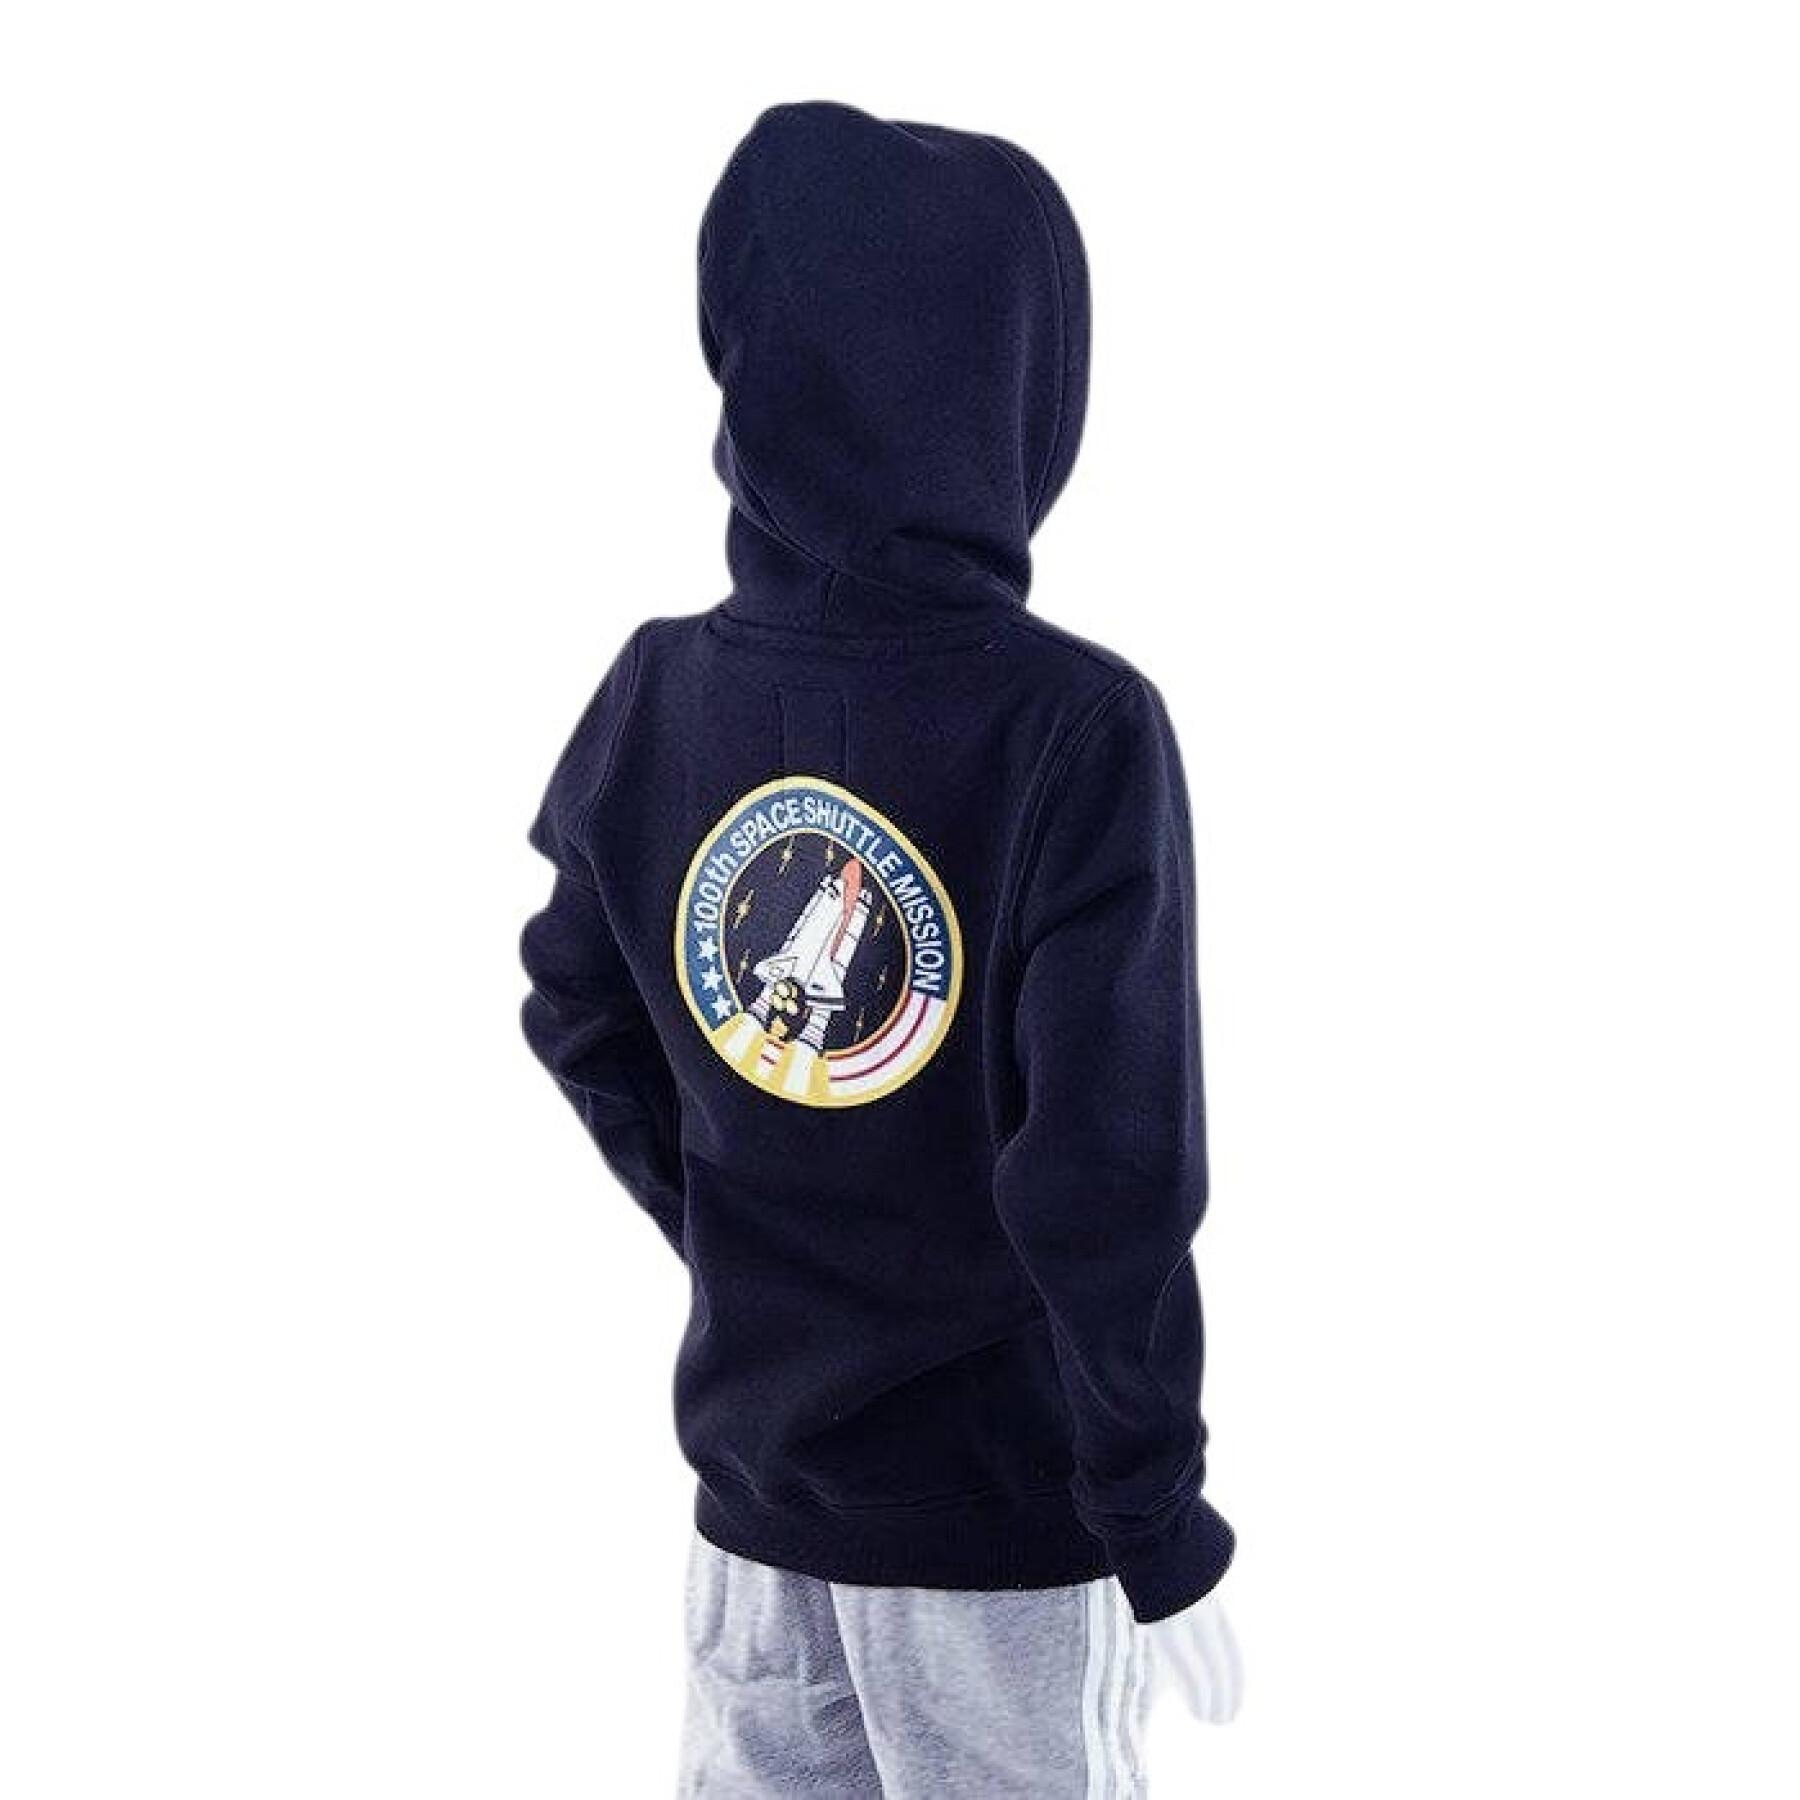 Children's hoodie Alpha Industries Space Shuttle